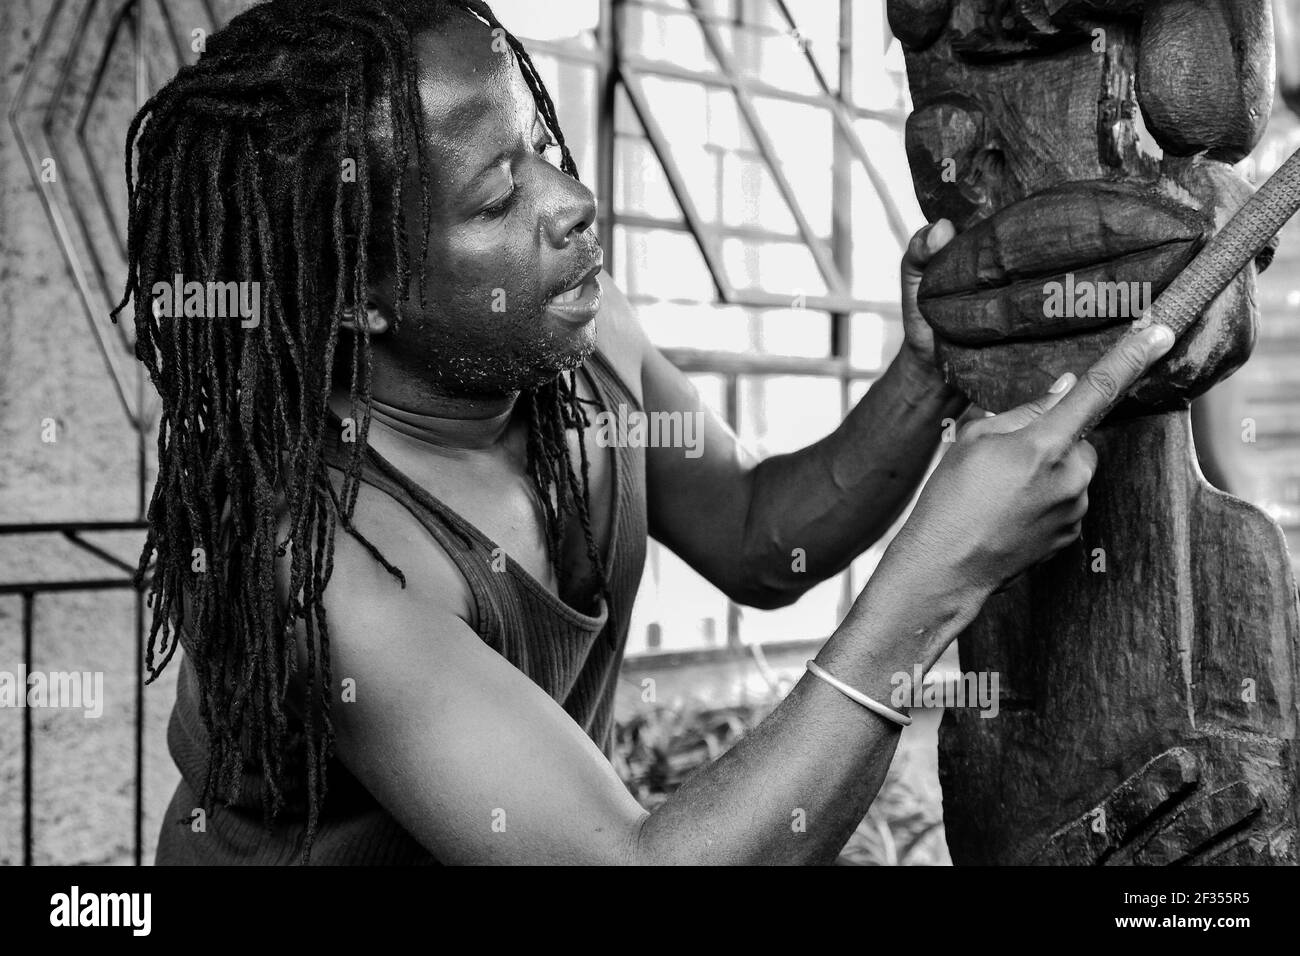 JOHANNESBURG, SÜDAFRIKA - 13. Mär 2021: Johannesburg, Südafrika - 17. Januar 2011: Afrikanischer Mann Bildhauer Schnitzerei eine traditionelle Statue aus woo Stockfoto